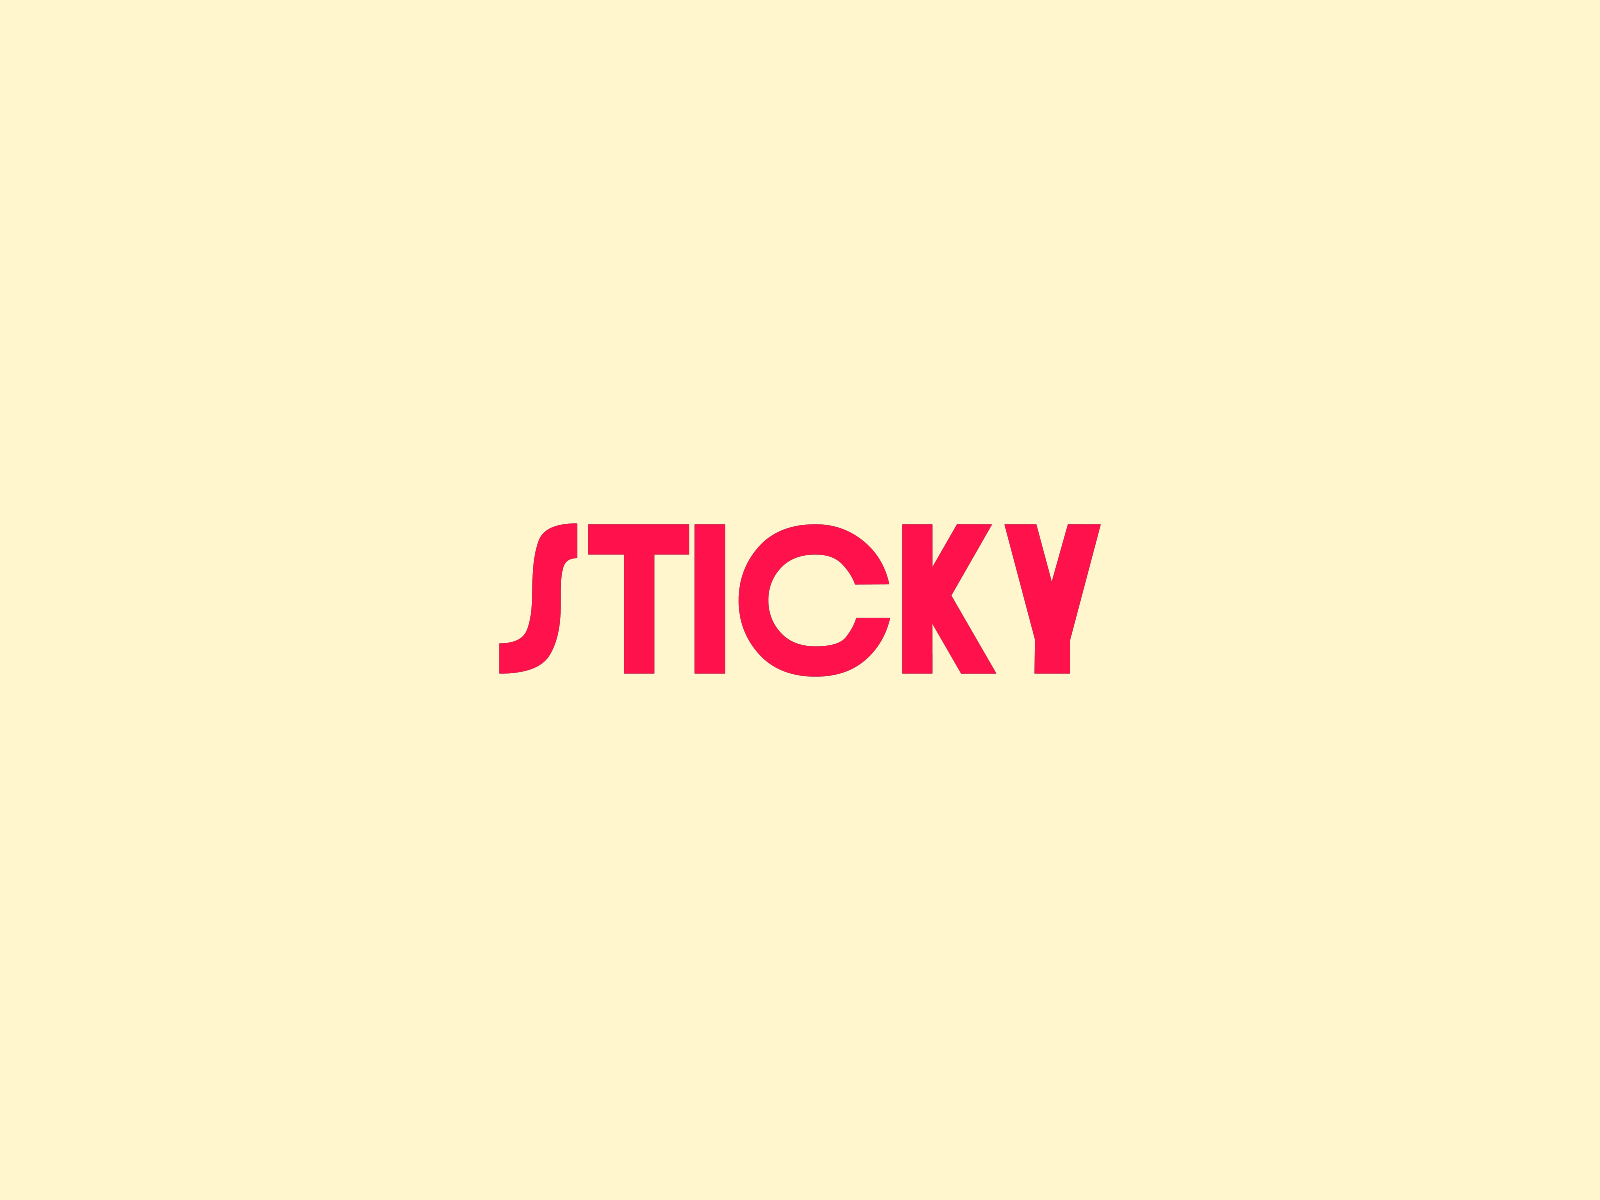 Sticky Text Animation